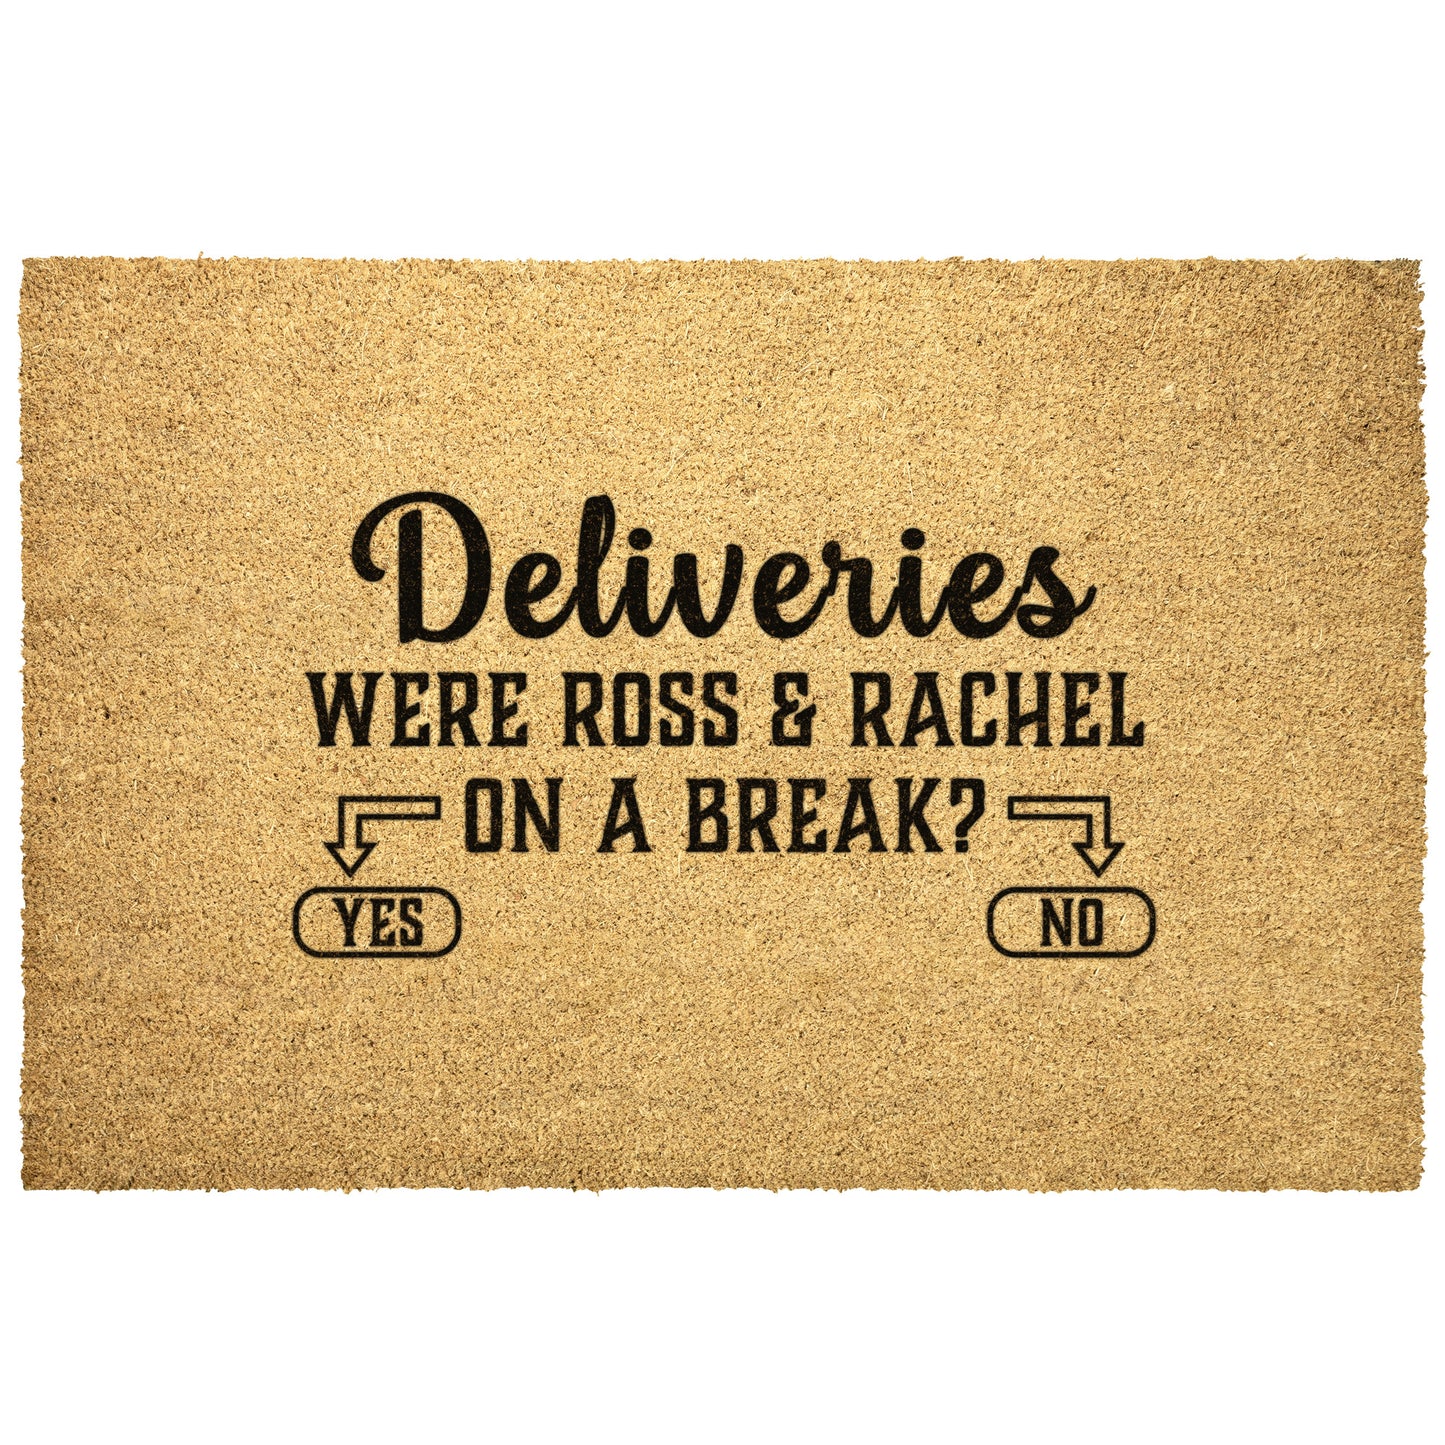 Were Ross and Rachel On A Break Doormat, Viral Friends Doormat, Cute d oormat, Friends Doormat, Home Decor, doormats, welcome mat, doormat